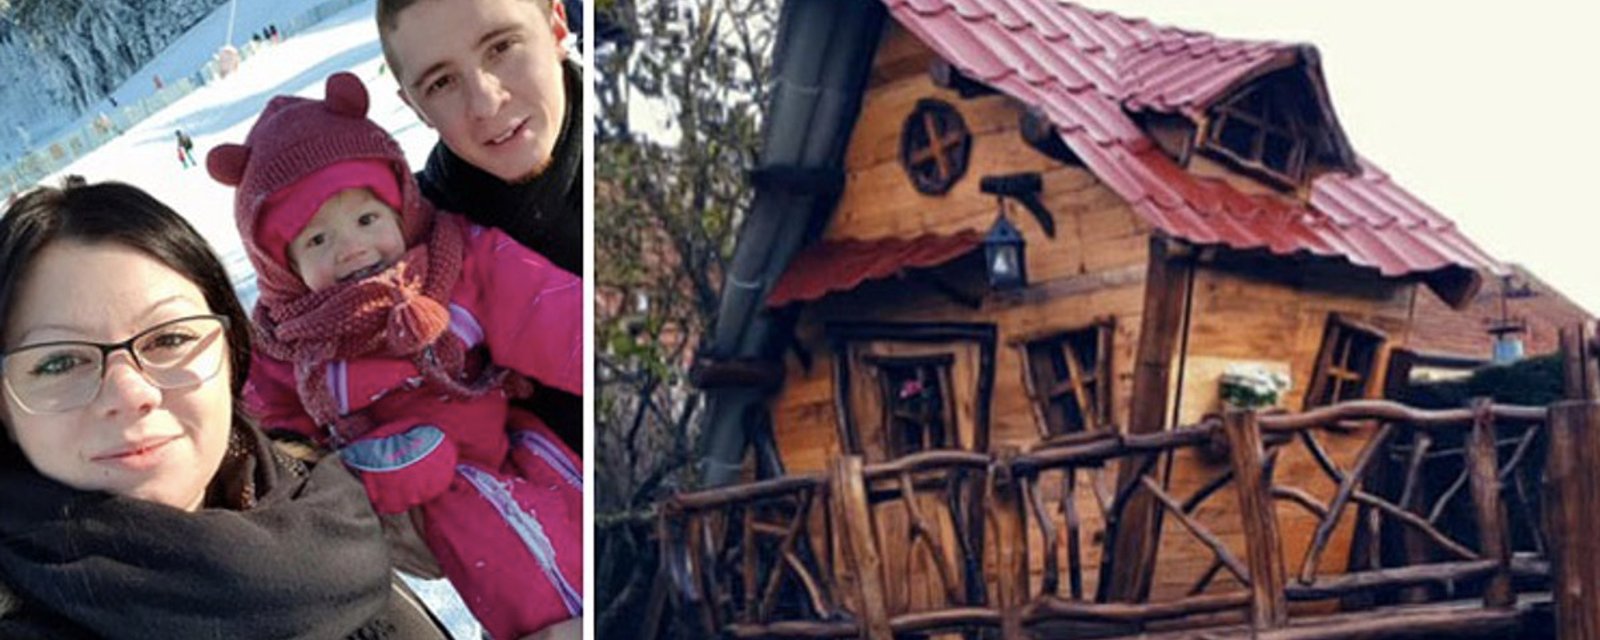 Un couple fait fureur sur Facebook après avoir construit une maison de rêve pour leur fillette